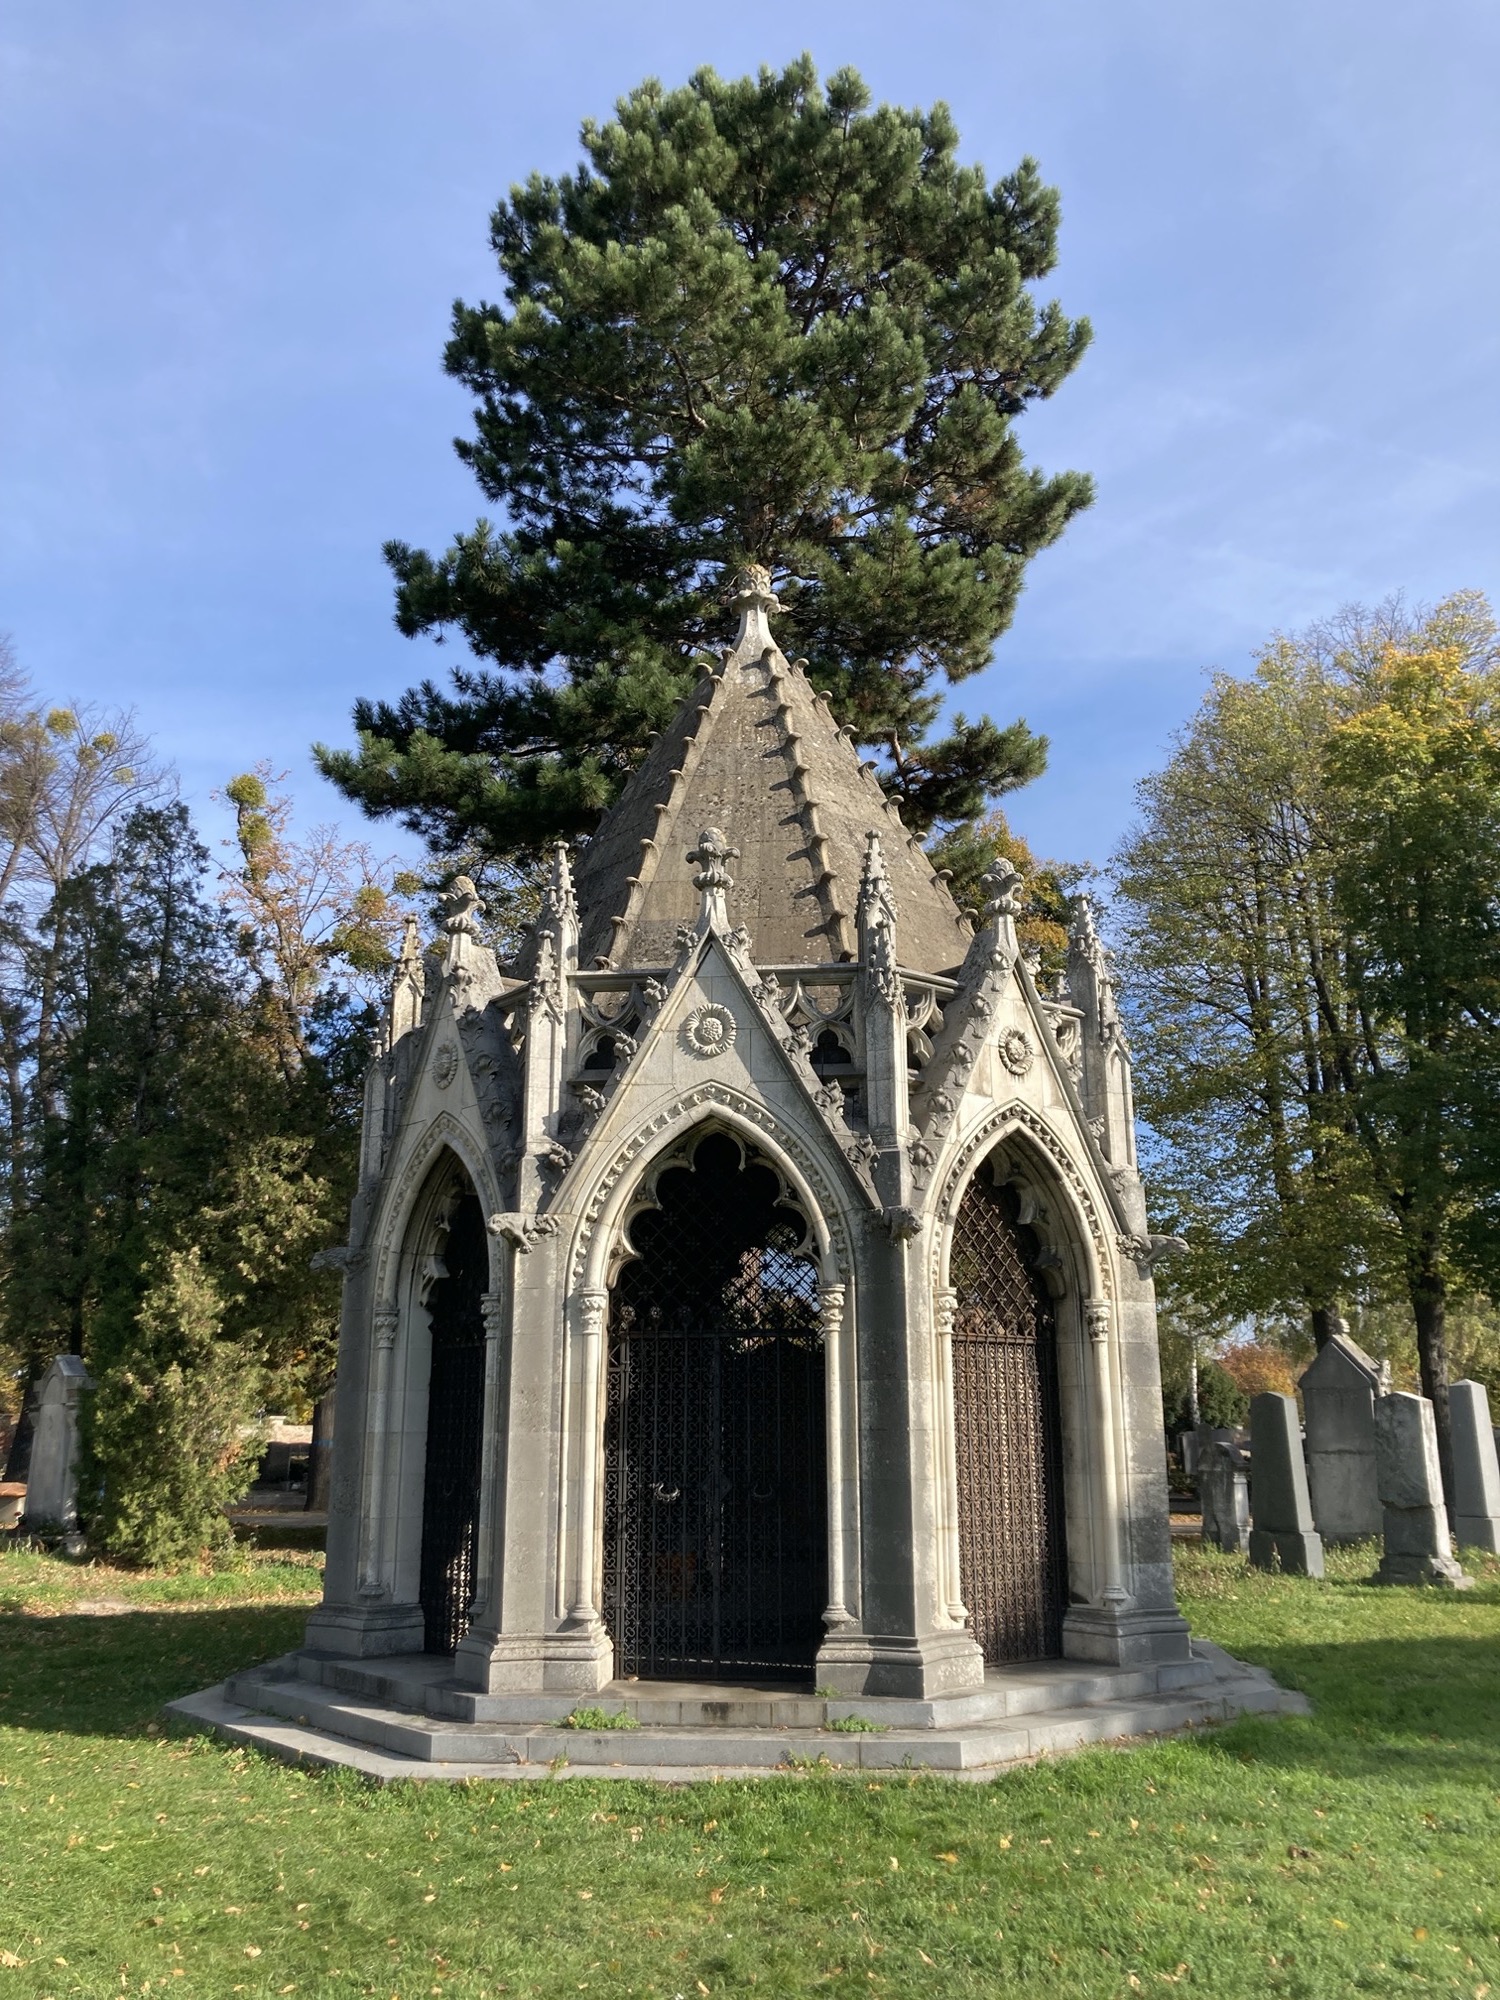 Mausoleum mit sechs-eckigem Grundriss, die Türen sind kunstvoll vergittert und mit verspielten Ziergiebeln versehen, Herbstsonne